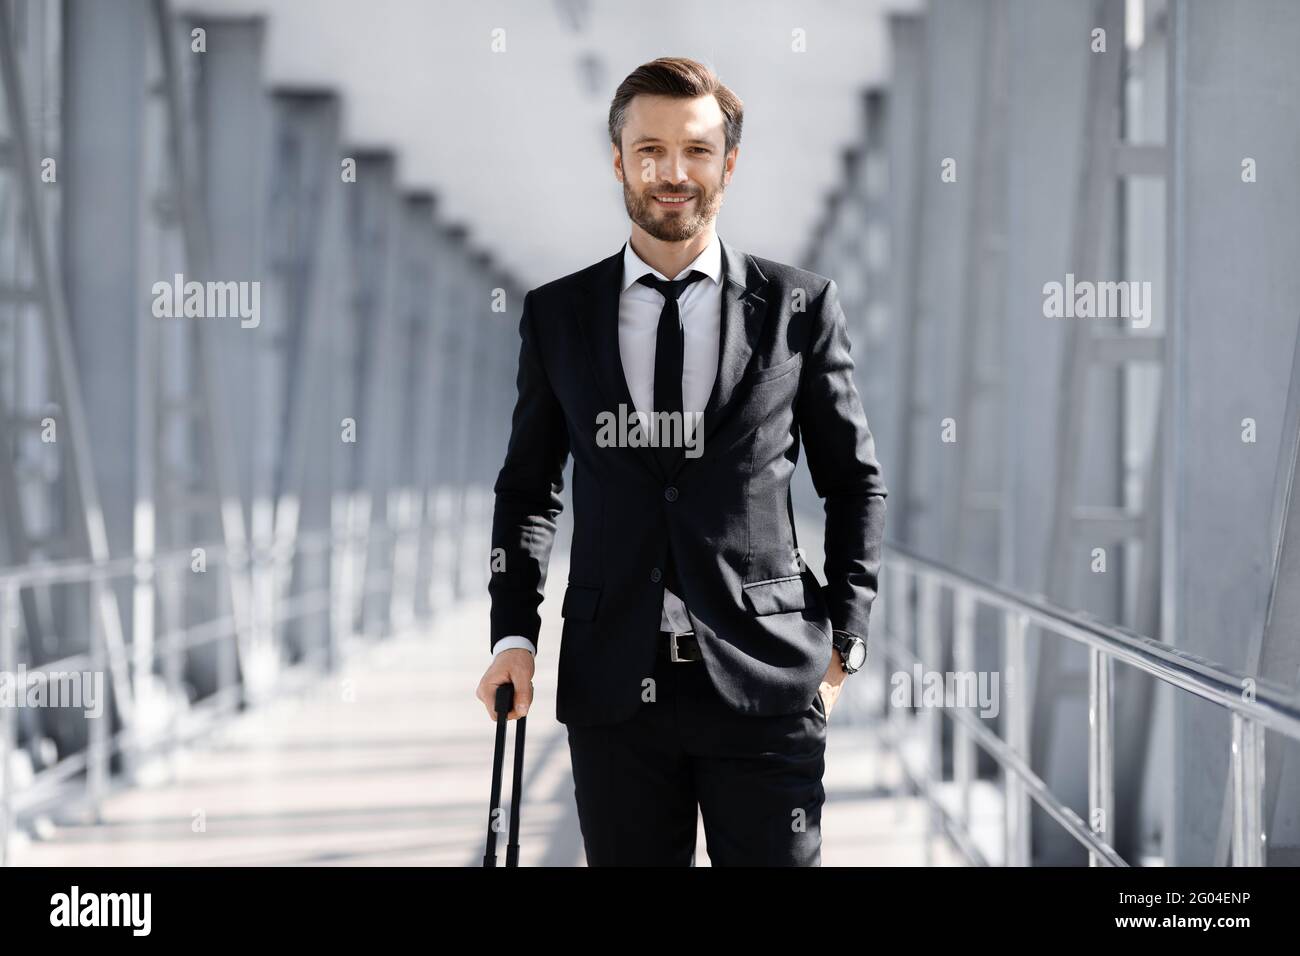 Wohlhabender Manager in schwarzem Anzug mit Koffer im Flughafen  Stockfotografie - Alamy